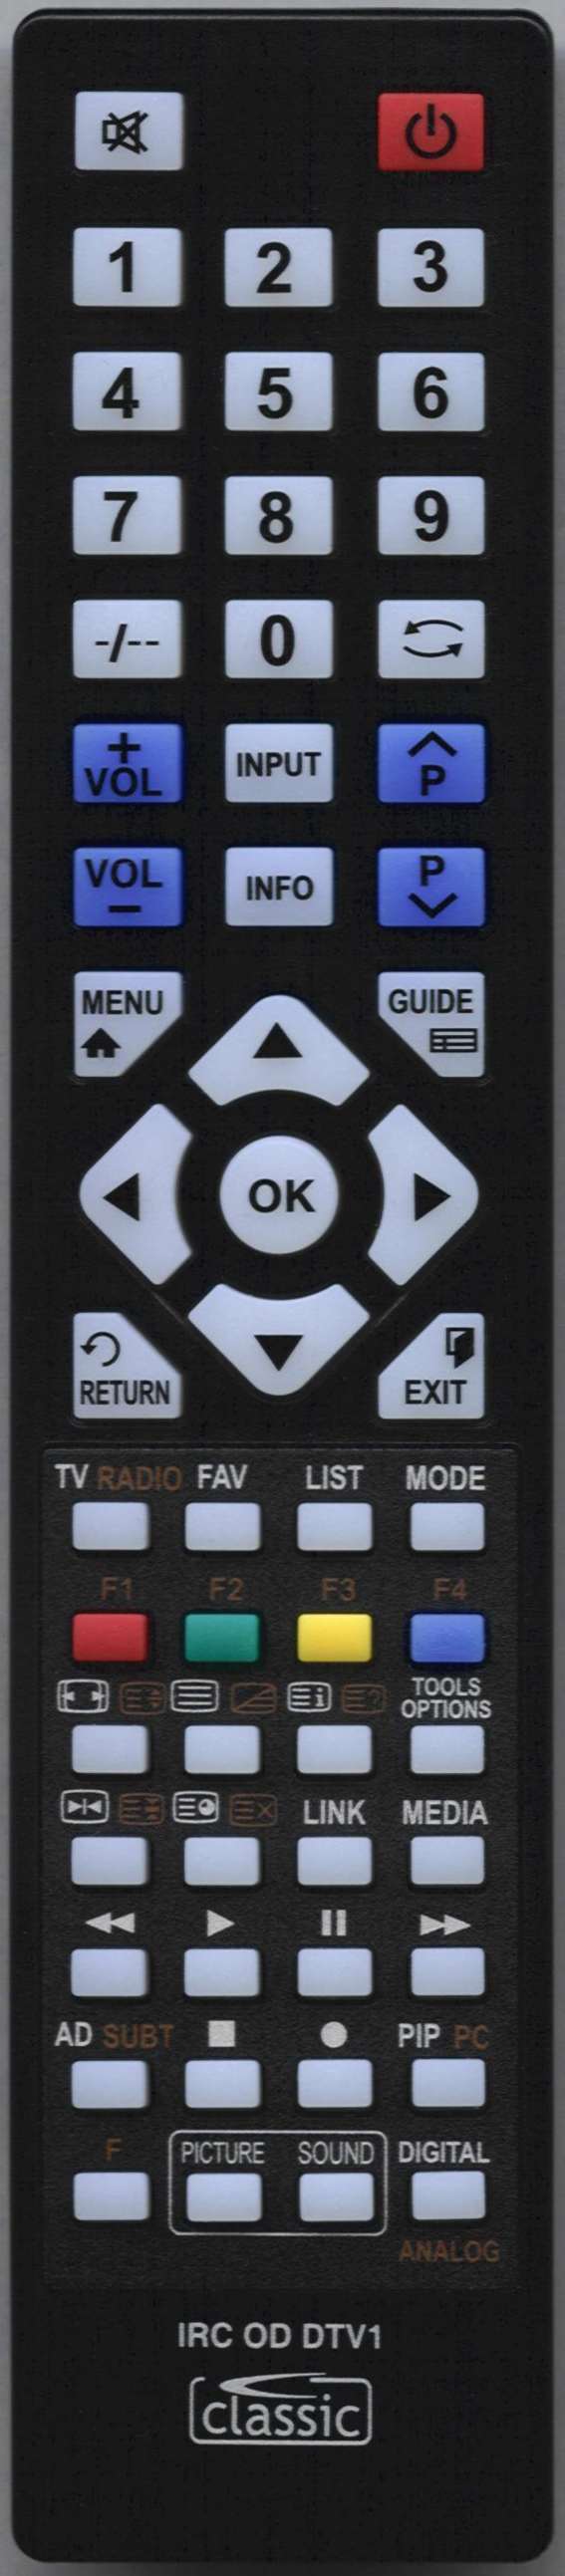 DYON ENTER 19 PRO-X2 Remote Control Alternative 